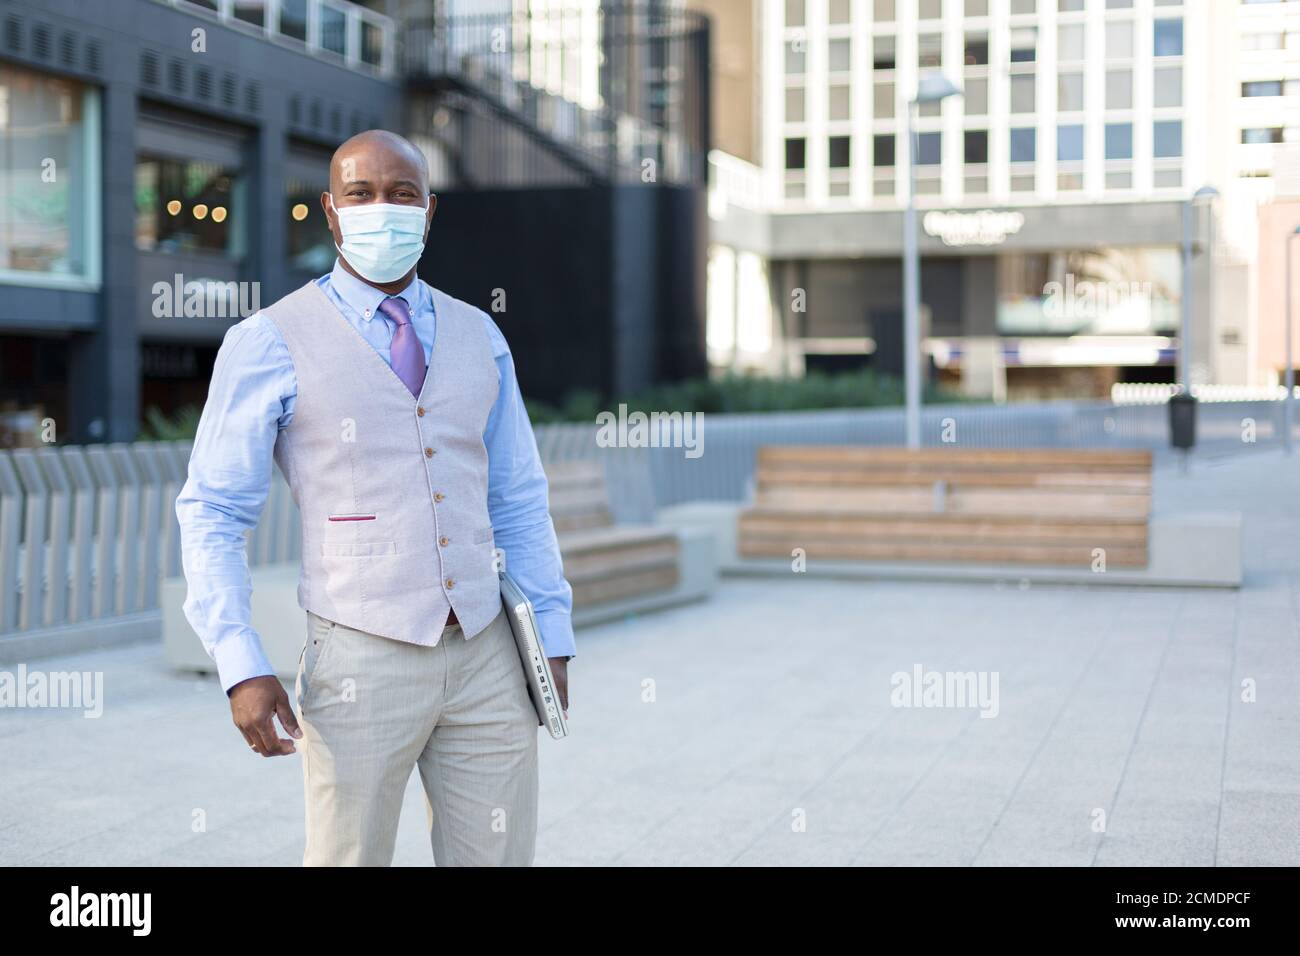 Unternehmungslustiger schwarzer Mann auf der Straße. Er trägt eine Gesichtsmaske und hält einen Laptop unter seinen Arm. Konzept der neuen Normalität im Kontext der Coronavirus-Pandemie. Stockfoto